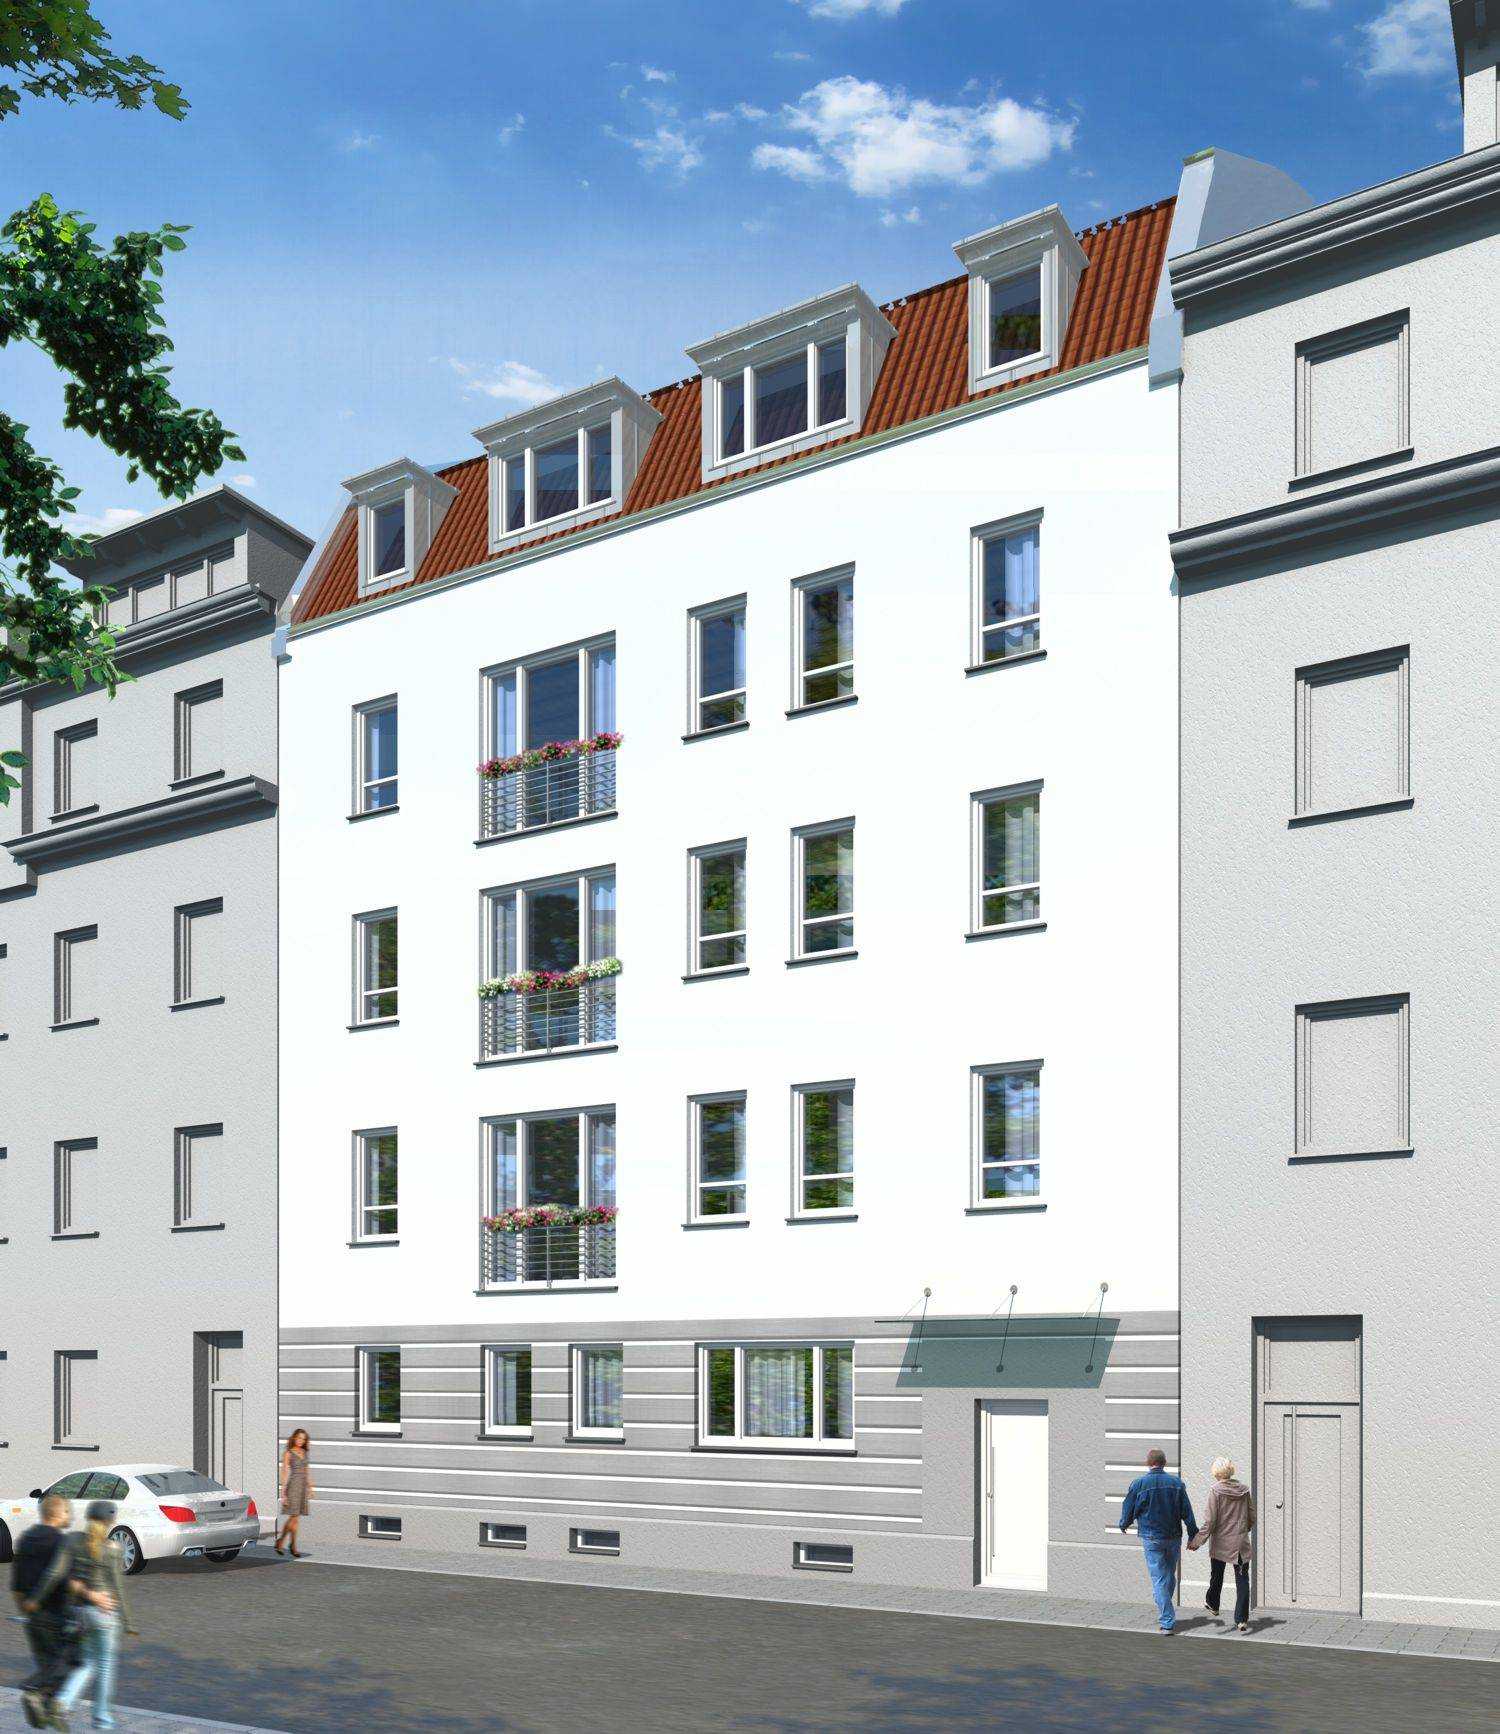 Architekturvisualisierung Sanierung Altbau (Straßenseite) in Adamstrasse 41, 90489 Nürnberg, für Kaller & Kaller Werbeagentur GmbH & Co. KG in 2012